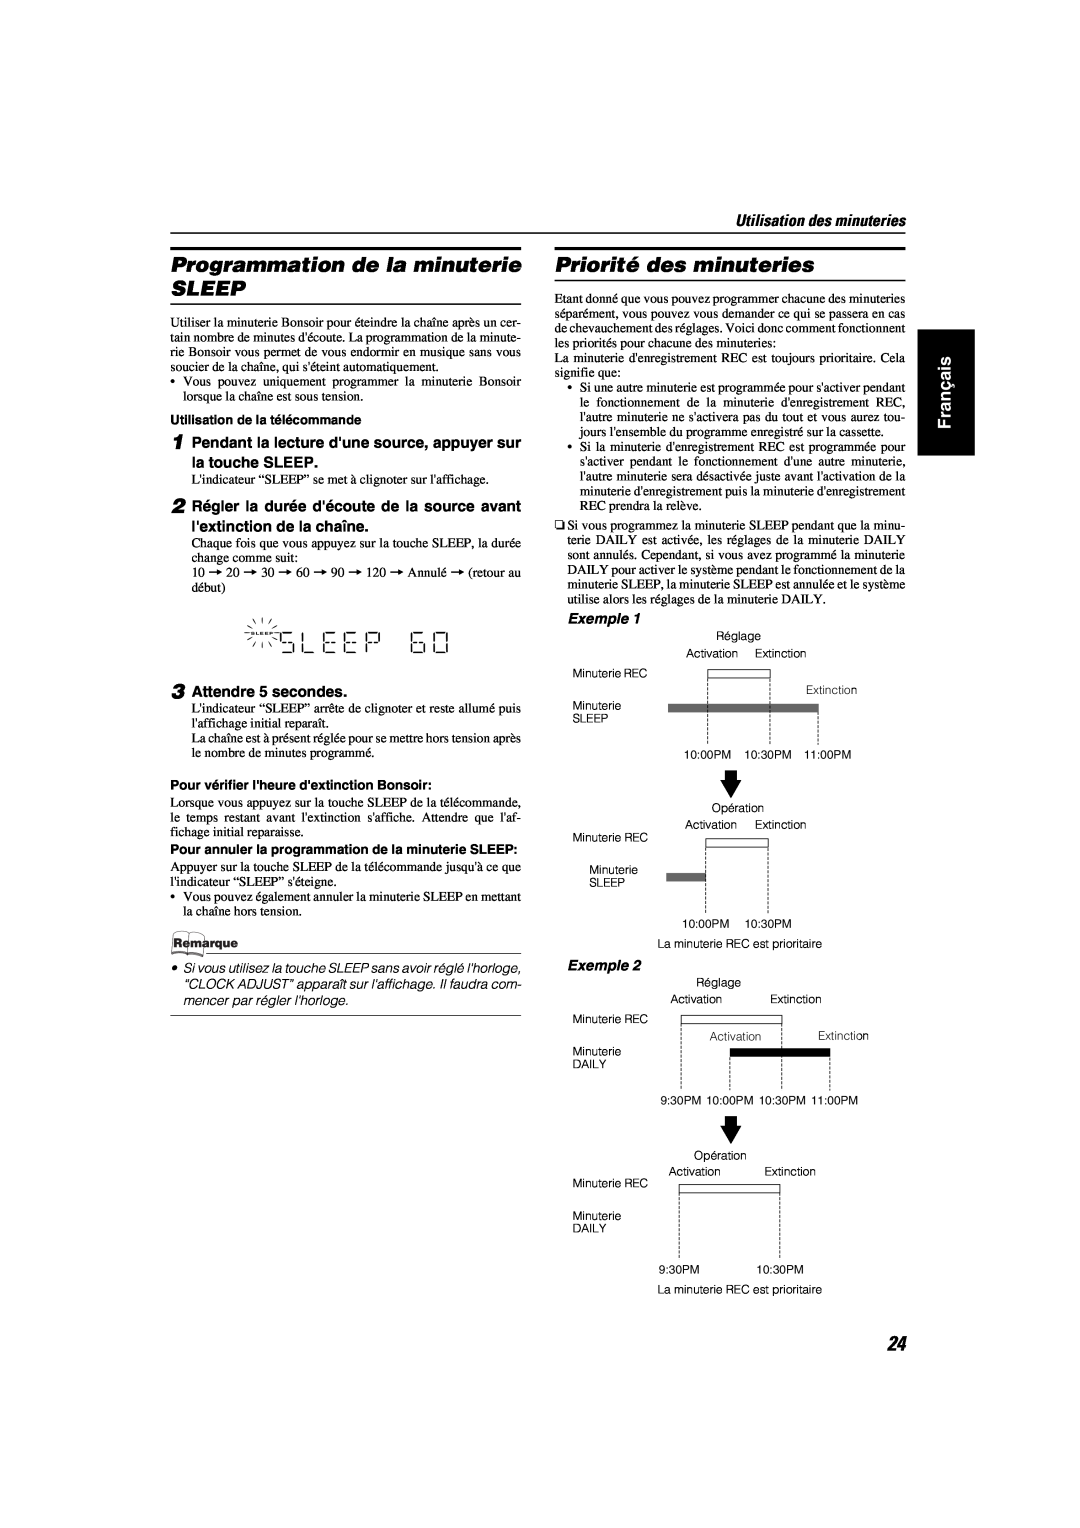 JVC MX-KA6 manual Programmation de la minuterie SLEEP, Priorité des minuteries, Français, Utilisation des minuteries 